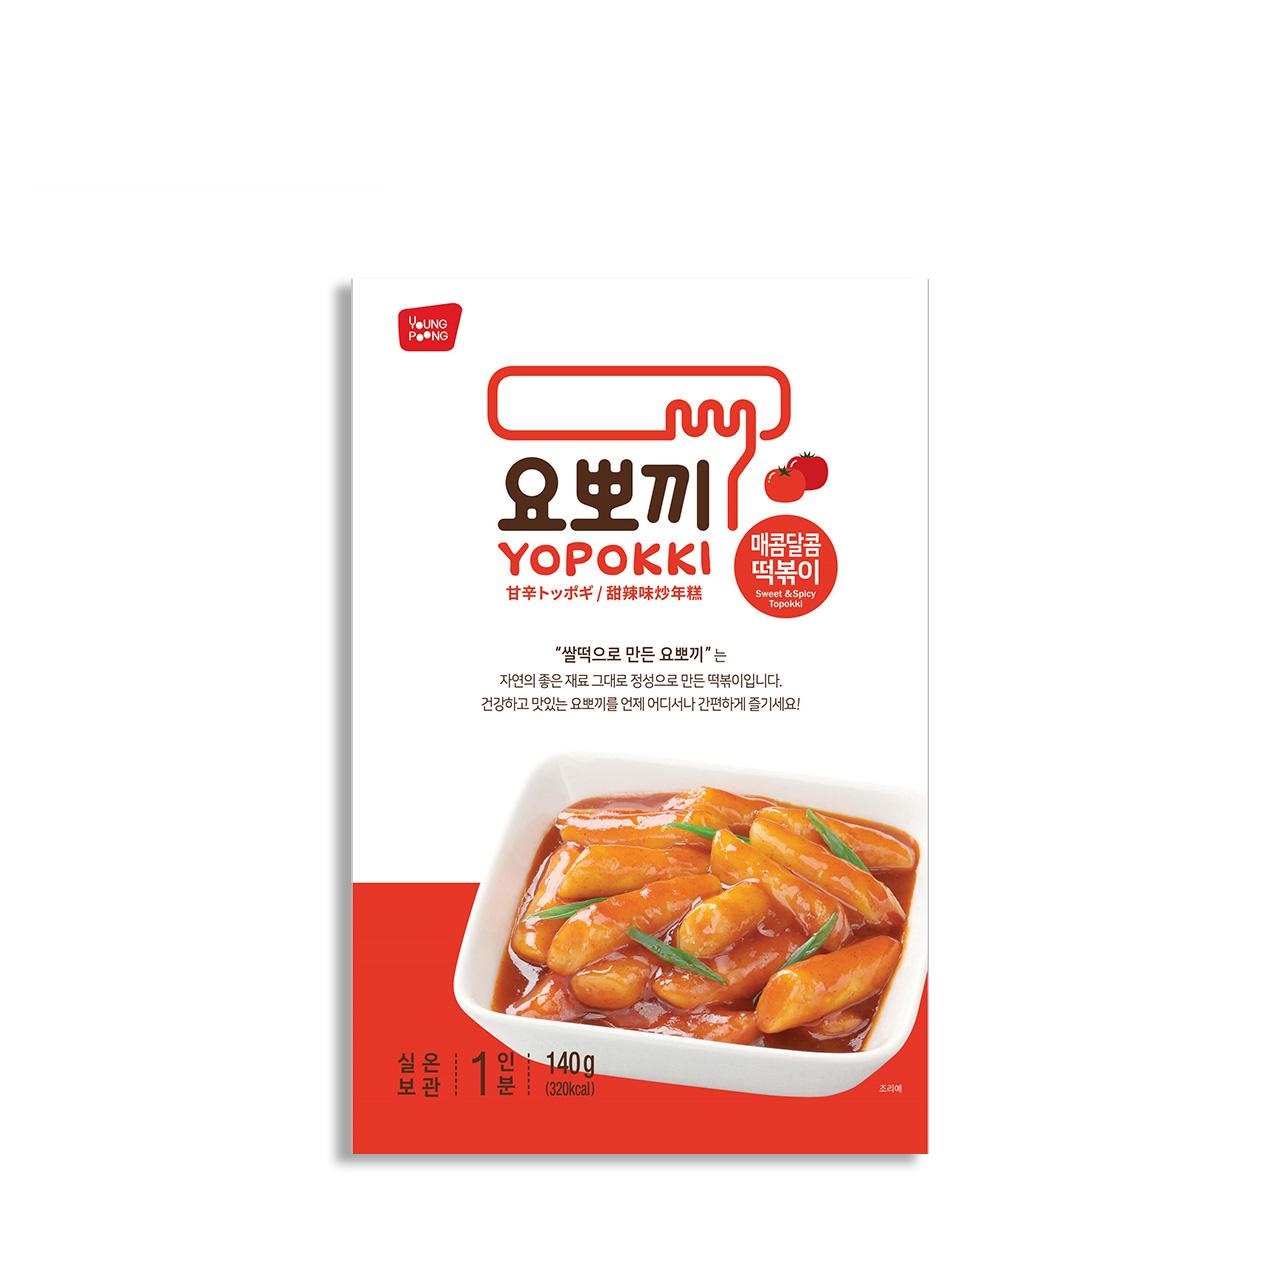 Yopokki Sweet & Spicy Flavor Tteokbokki Topokki Korean Rice Cake